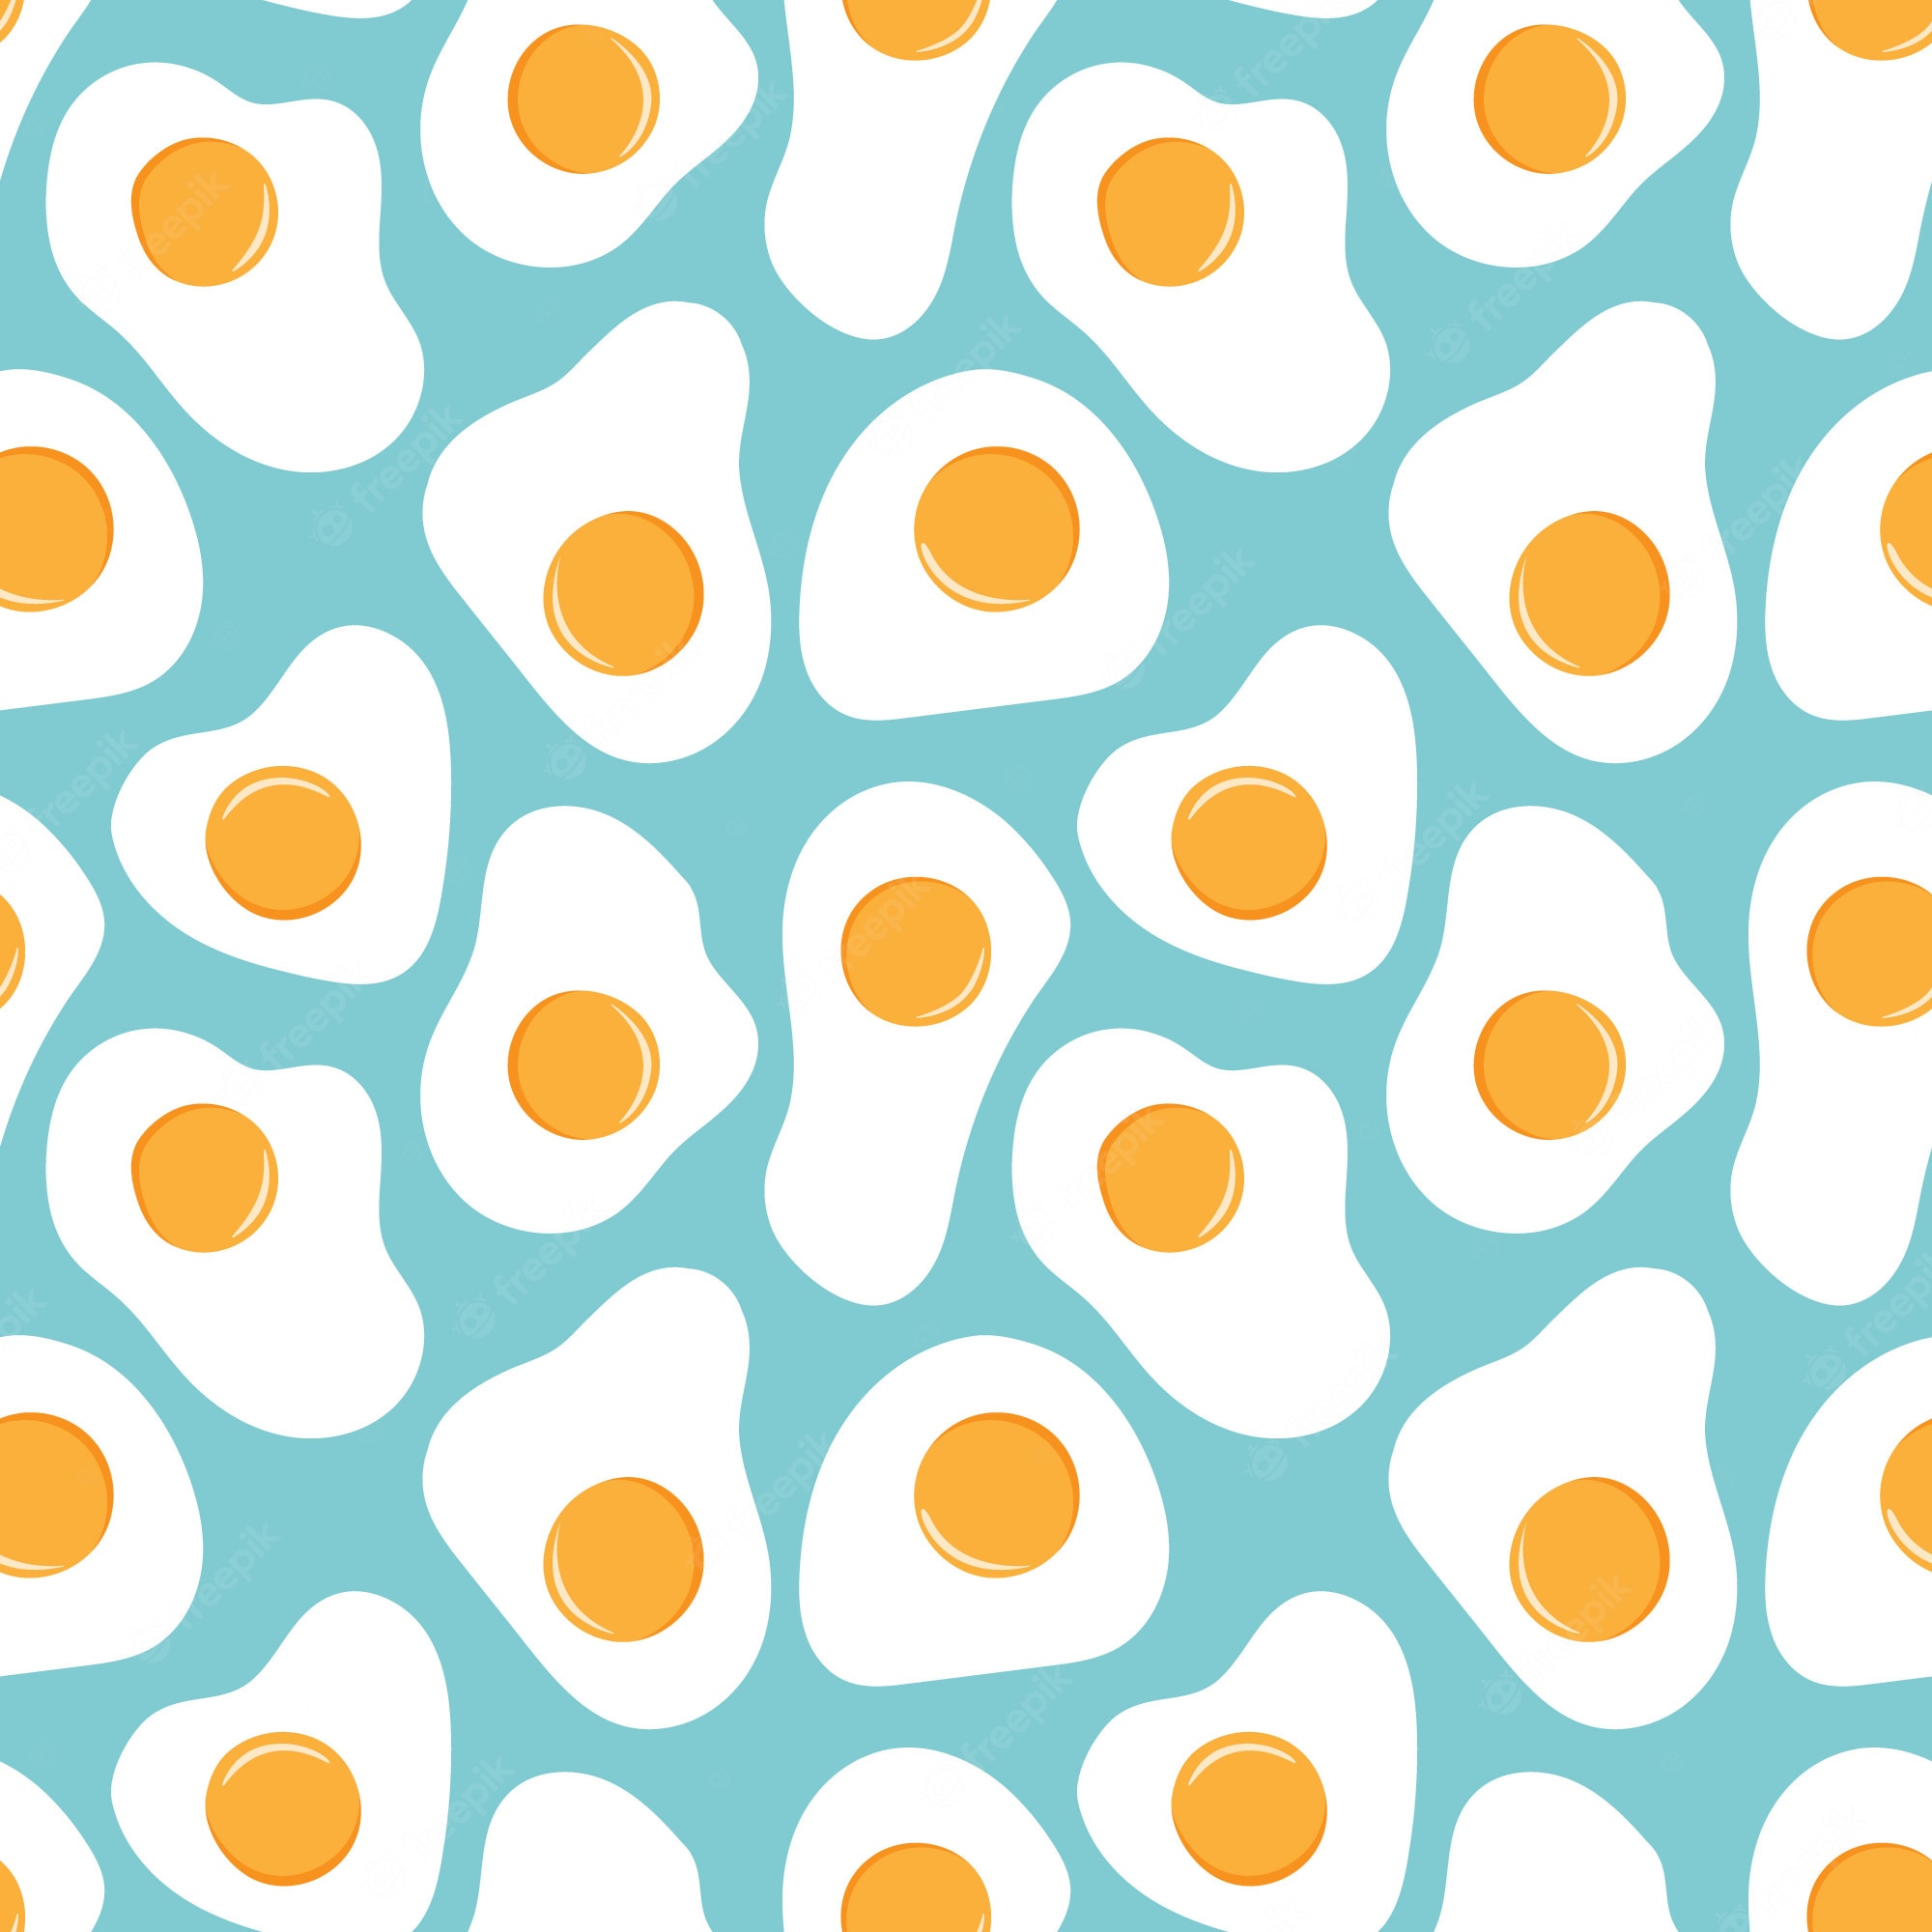 Egg pattern - seamless background - Egg